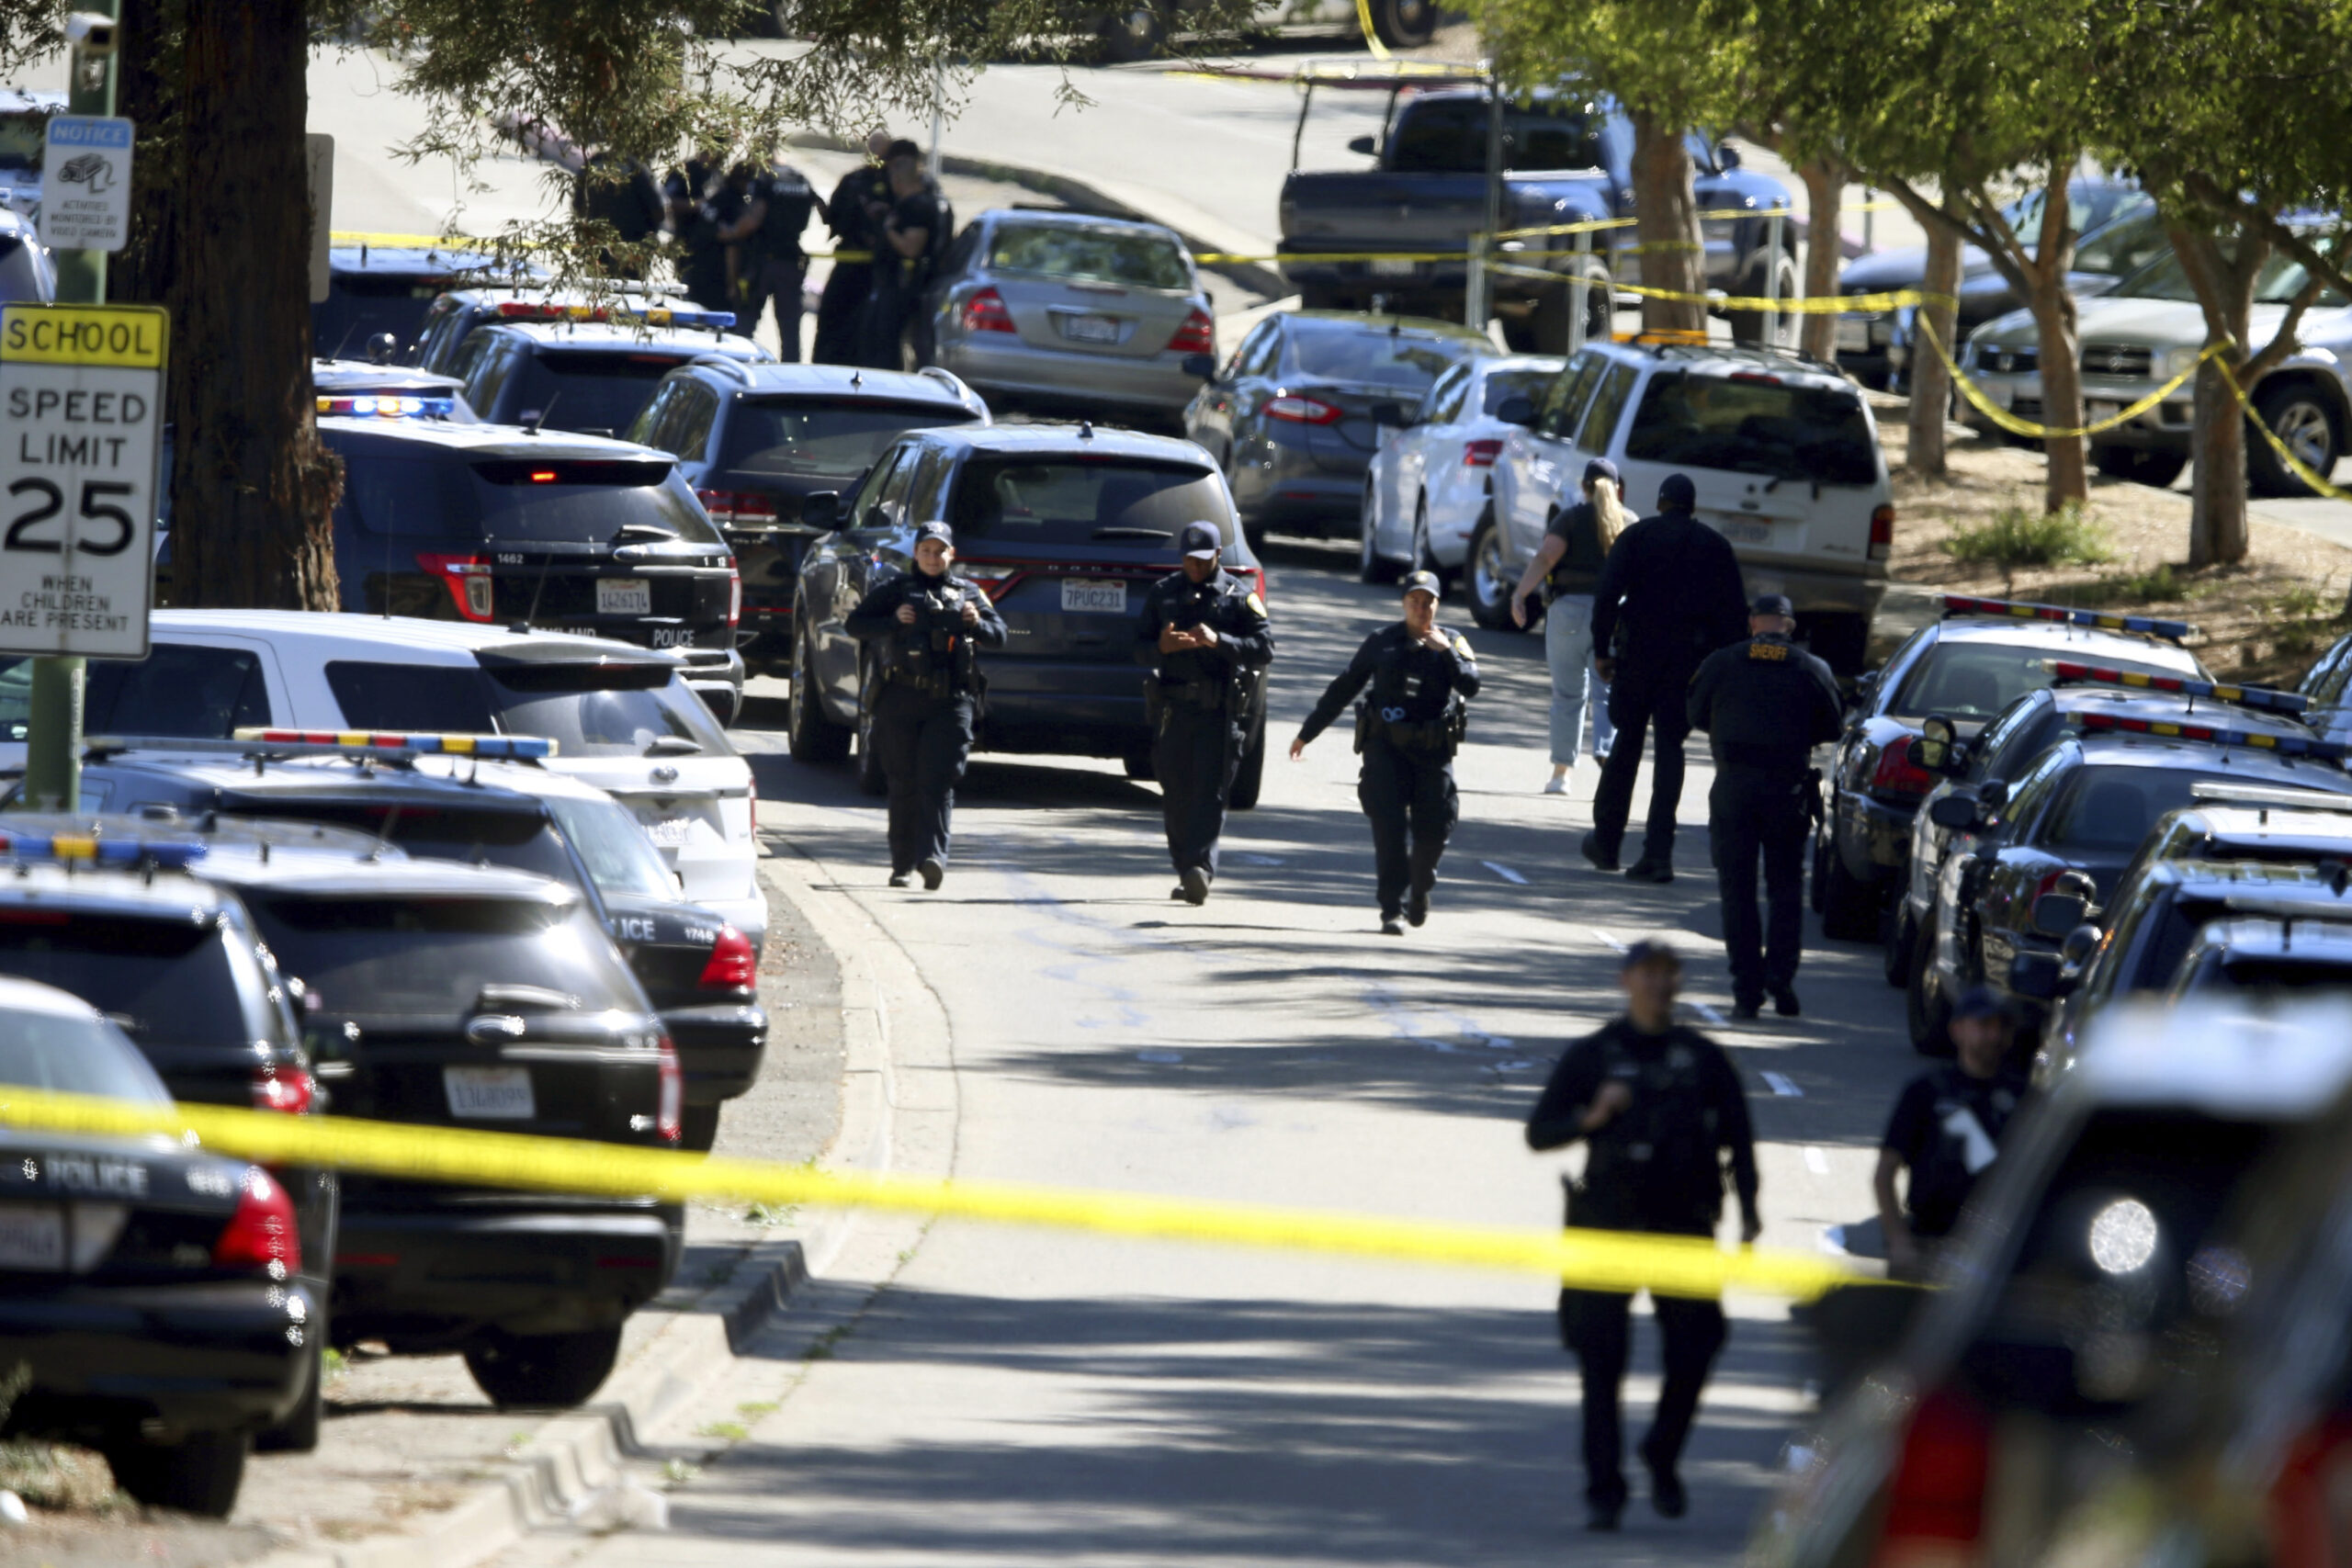 Polizeibeamte im Einsatz auf dem Schulgelände in Oakland. Sechs Menschen wurden durch Schüsse verletzt.